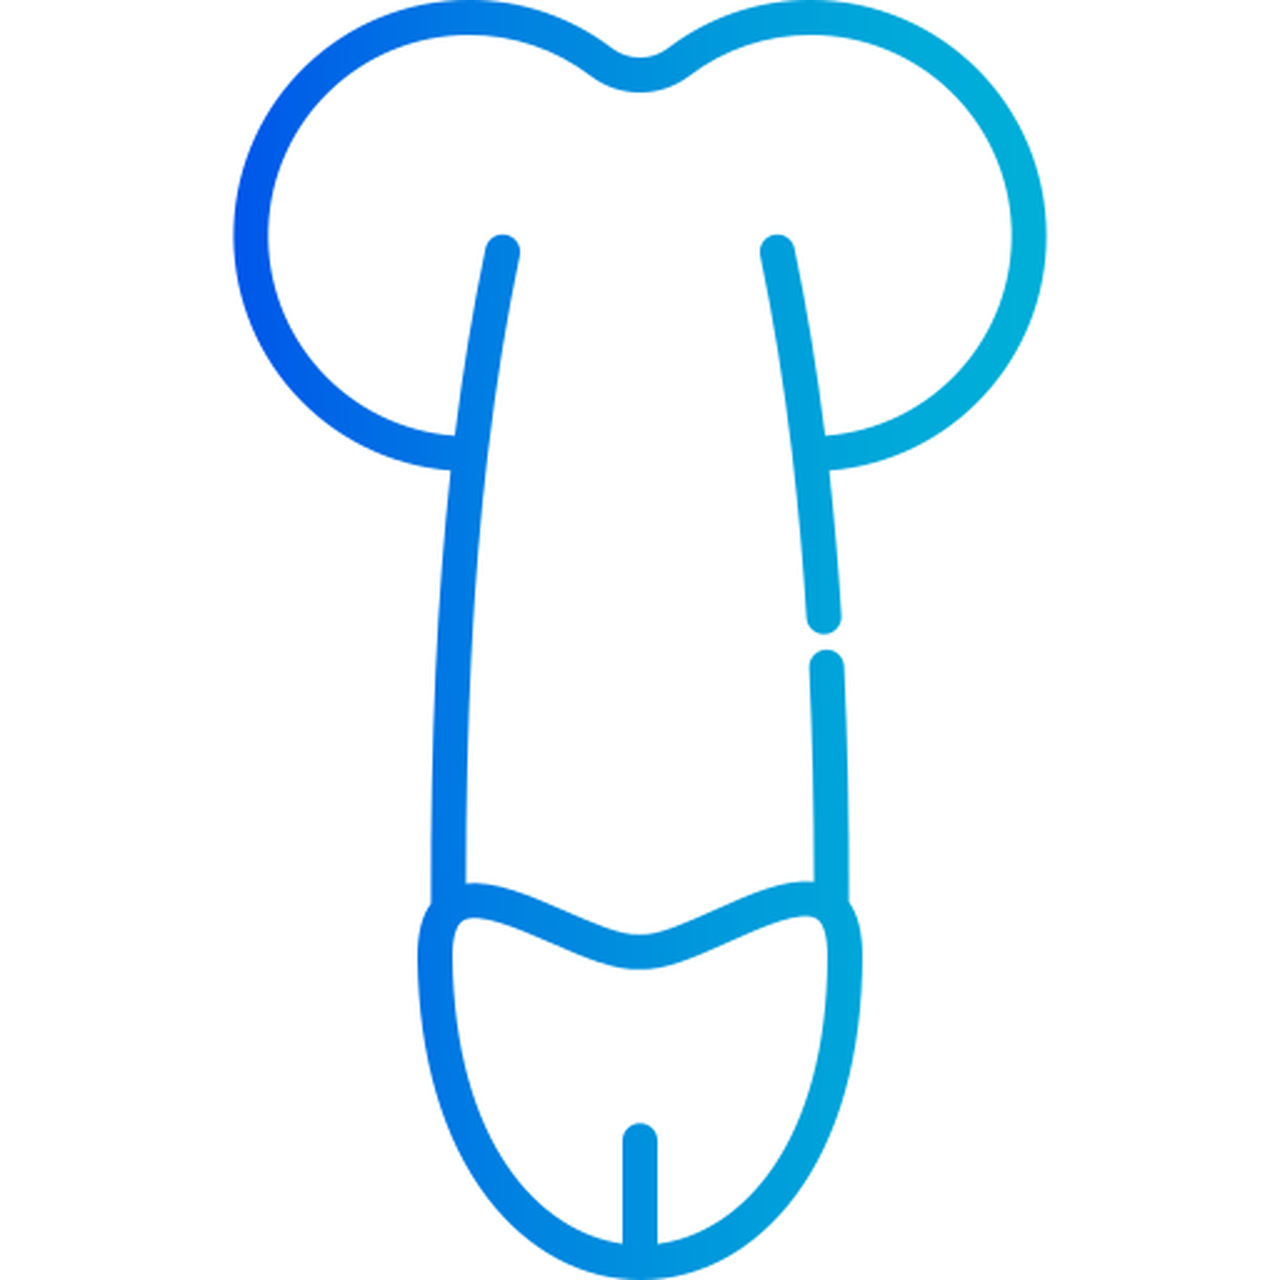 Urologia Goiânia - Quando a prótese peniana é indicada?